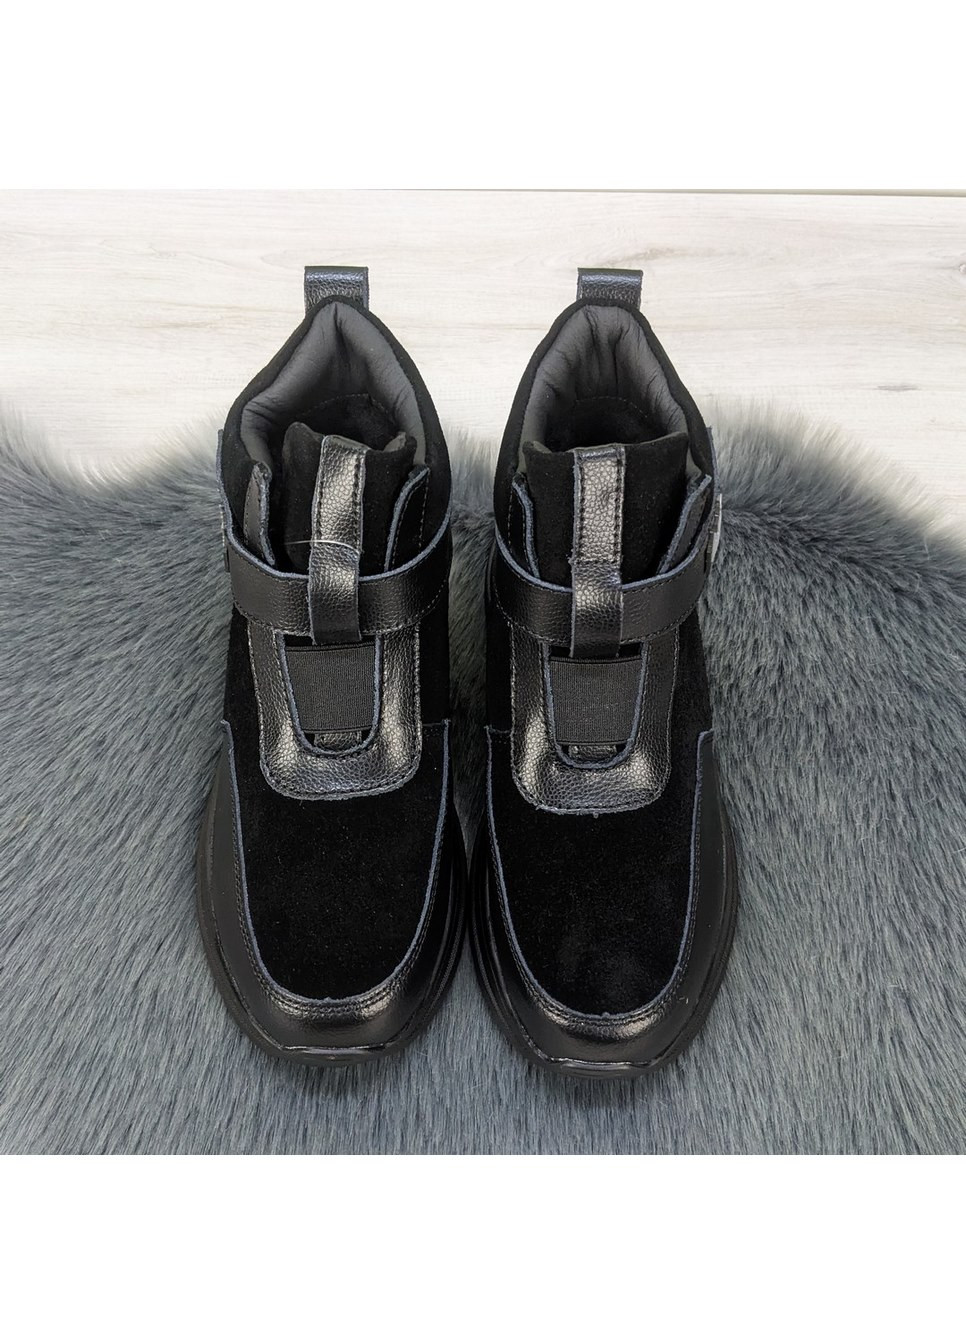 Зимние ботинки женские зимние черные замшевые на липучках KDSL из натуральной замши